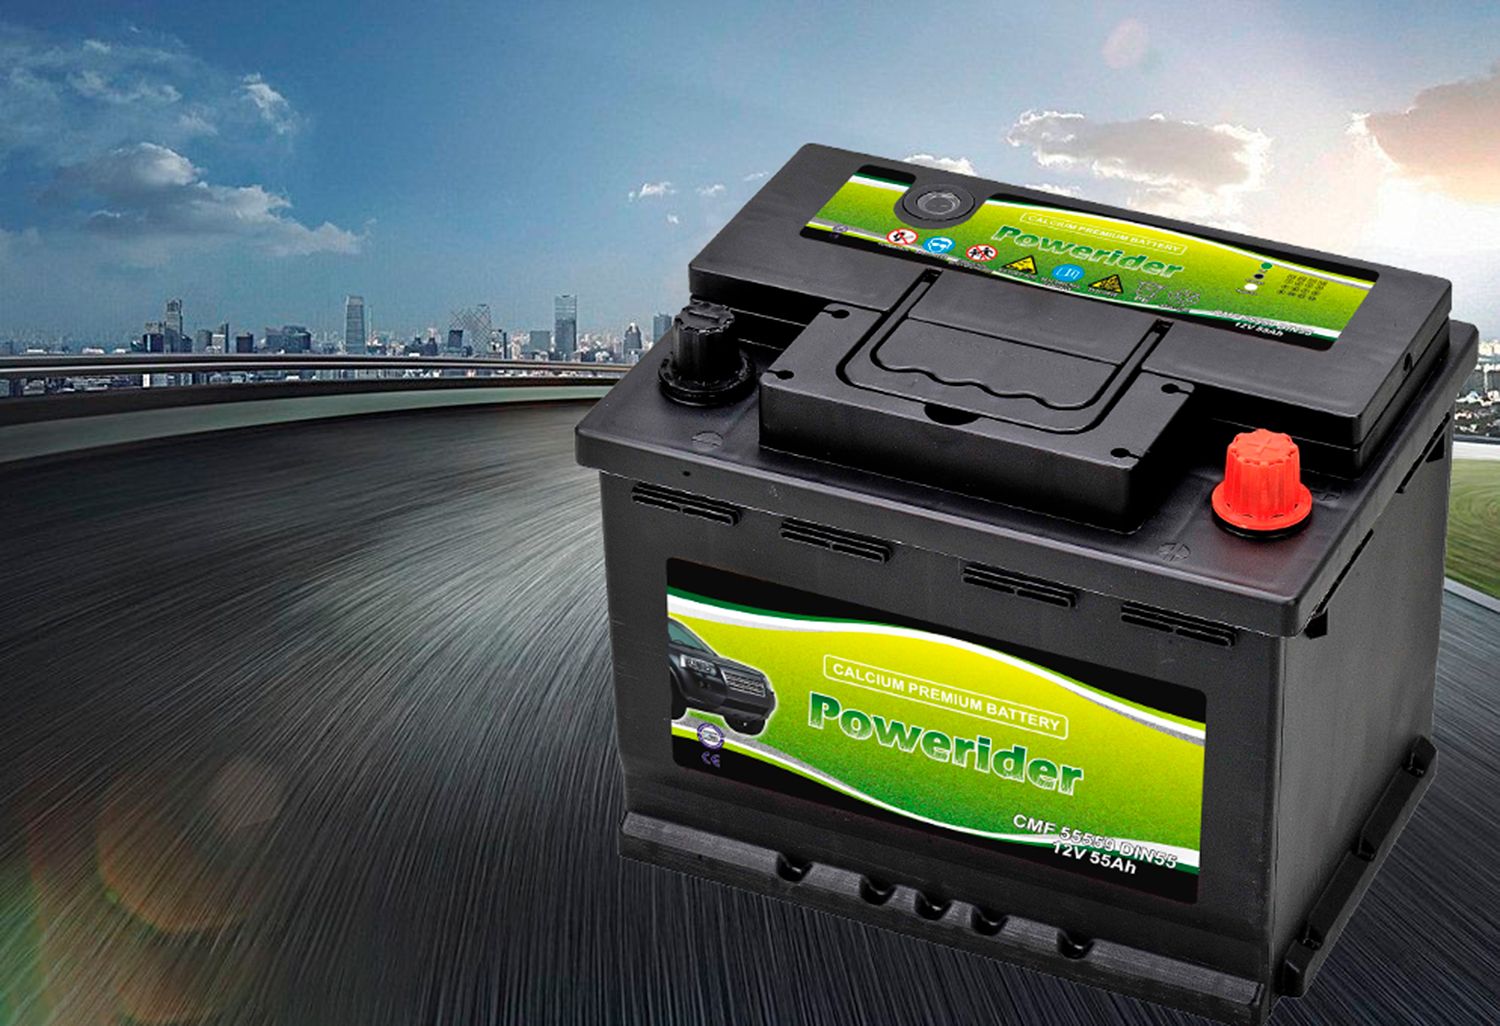 MF DIN55 55559 car auto truck batteries